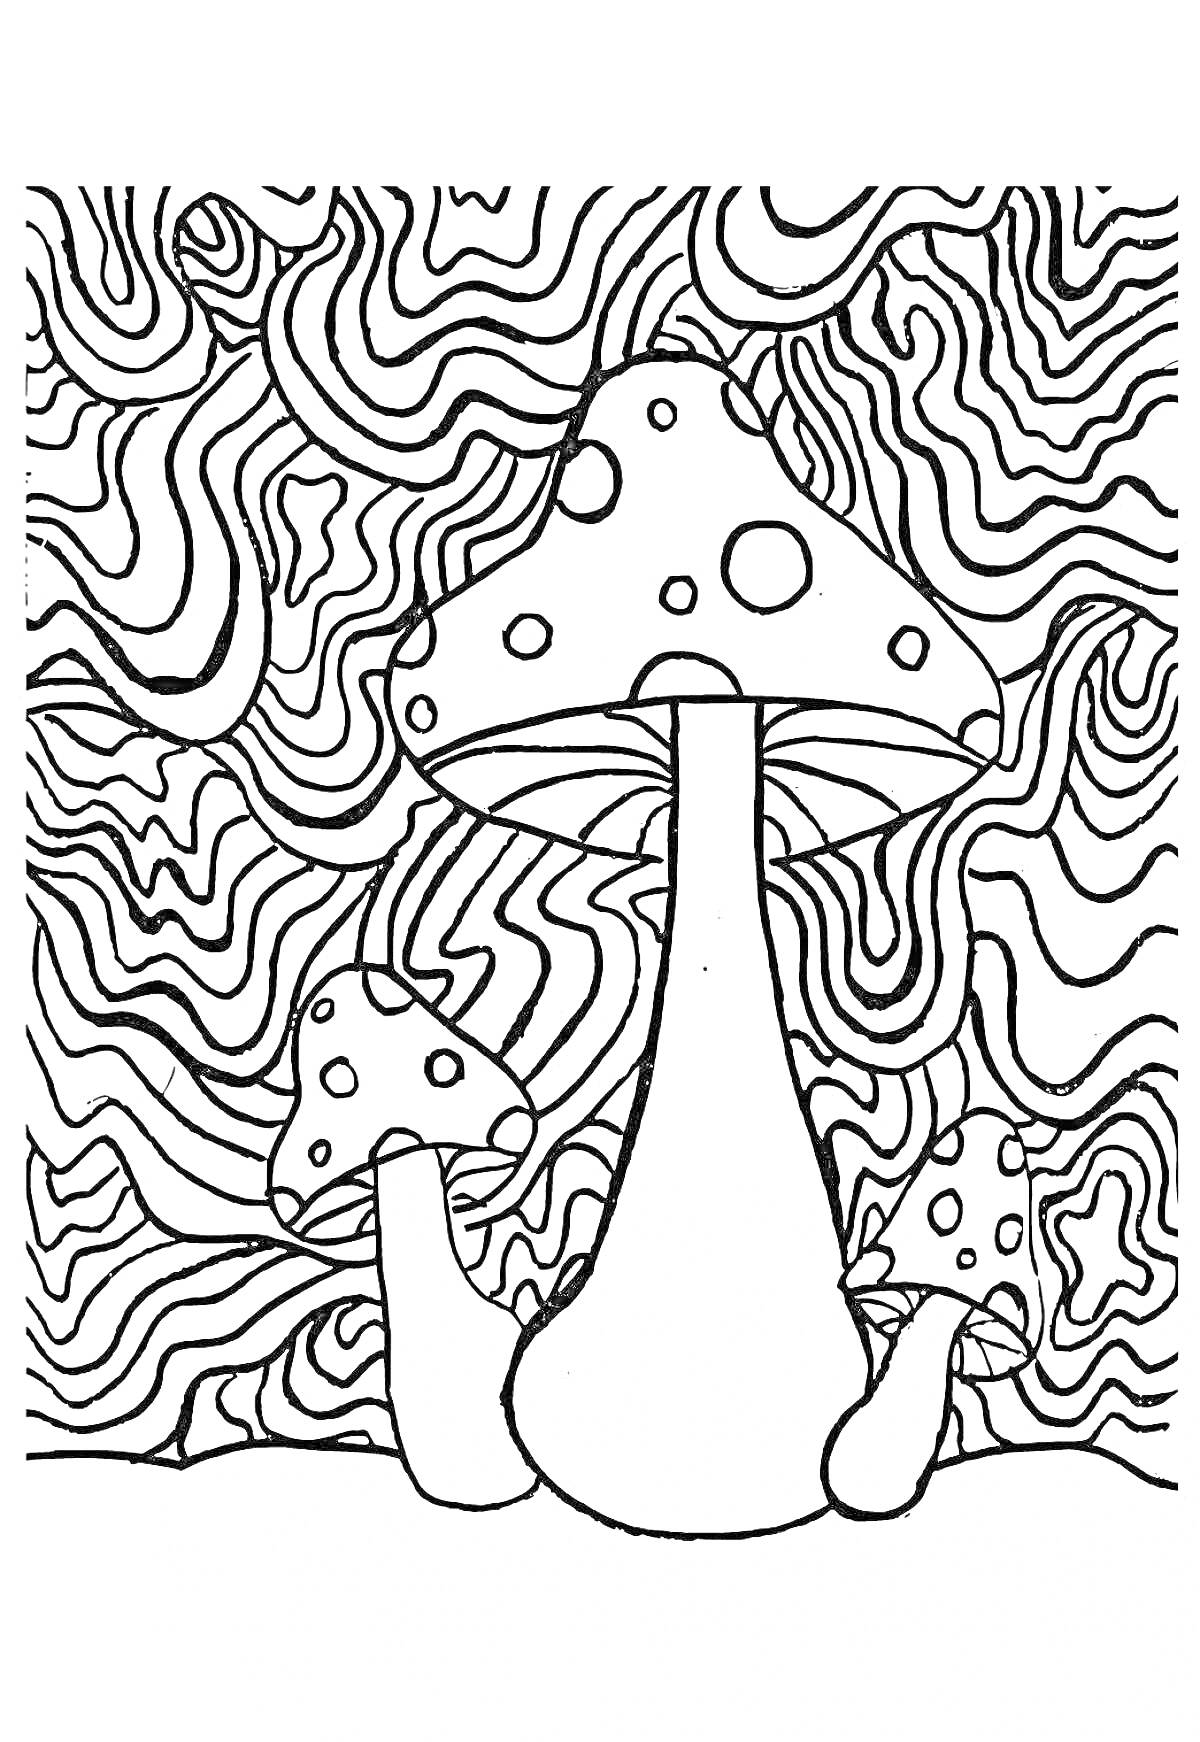 Раскраска Психоделические грибы на волнистом фоне